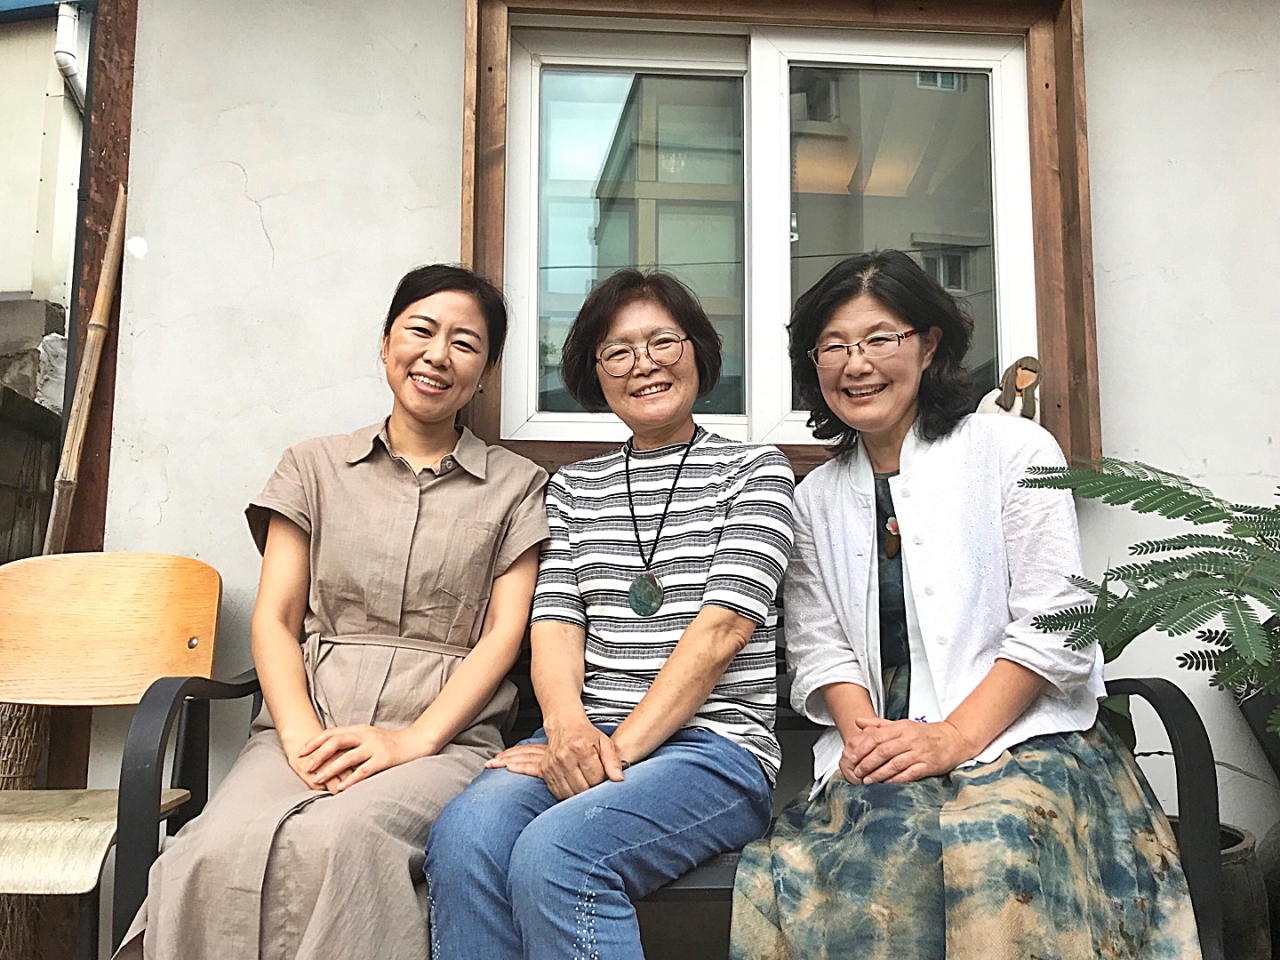 왼쪽부터 풀꽃협동조합 김순자 캘리크라피 작가, 김혜식 사진가, 루치아 씨.